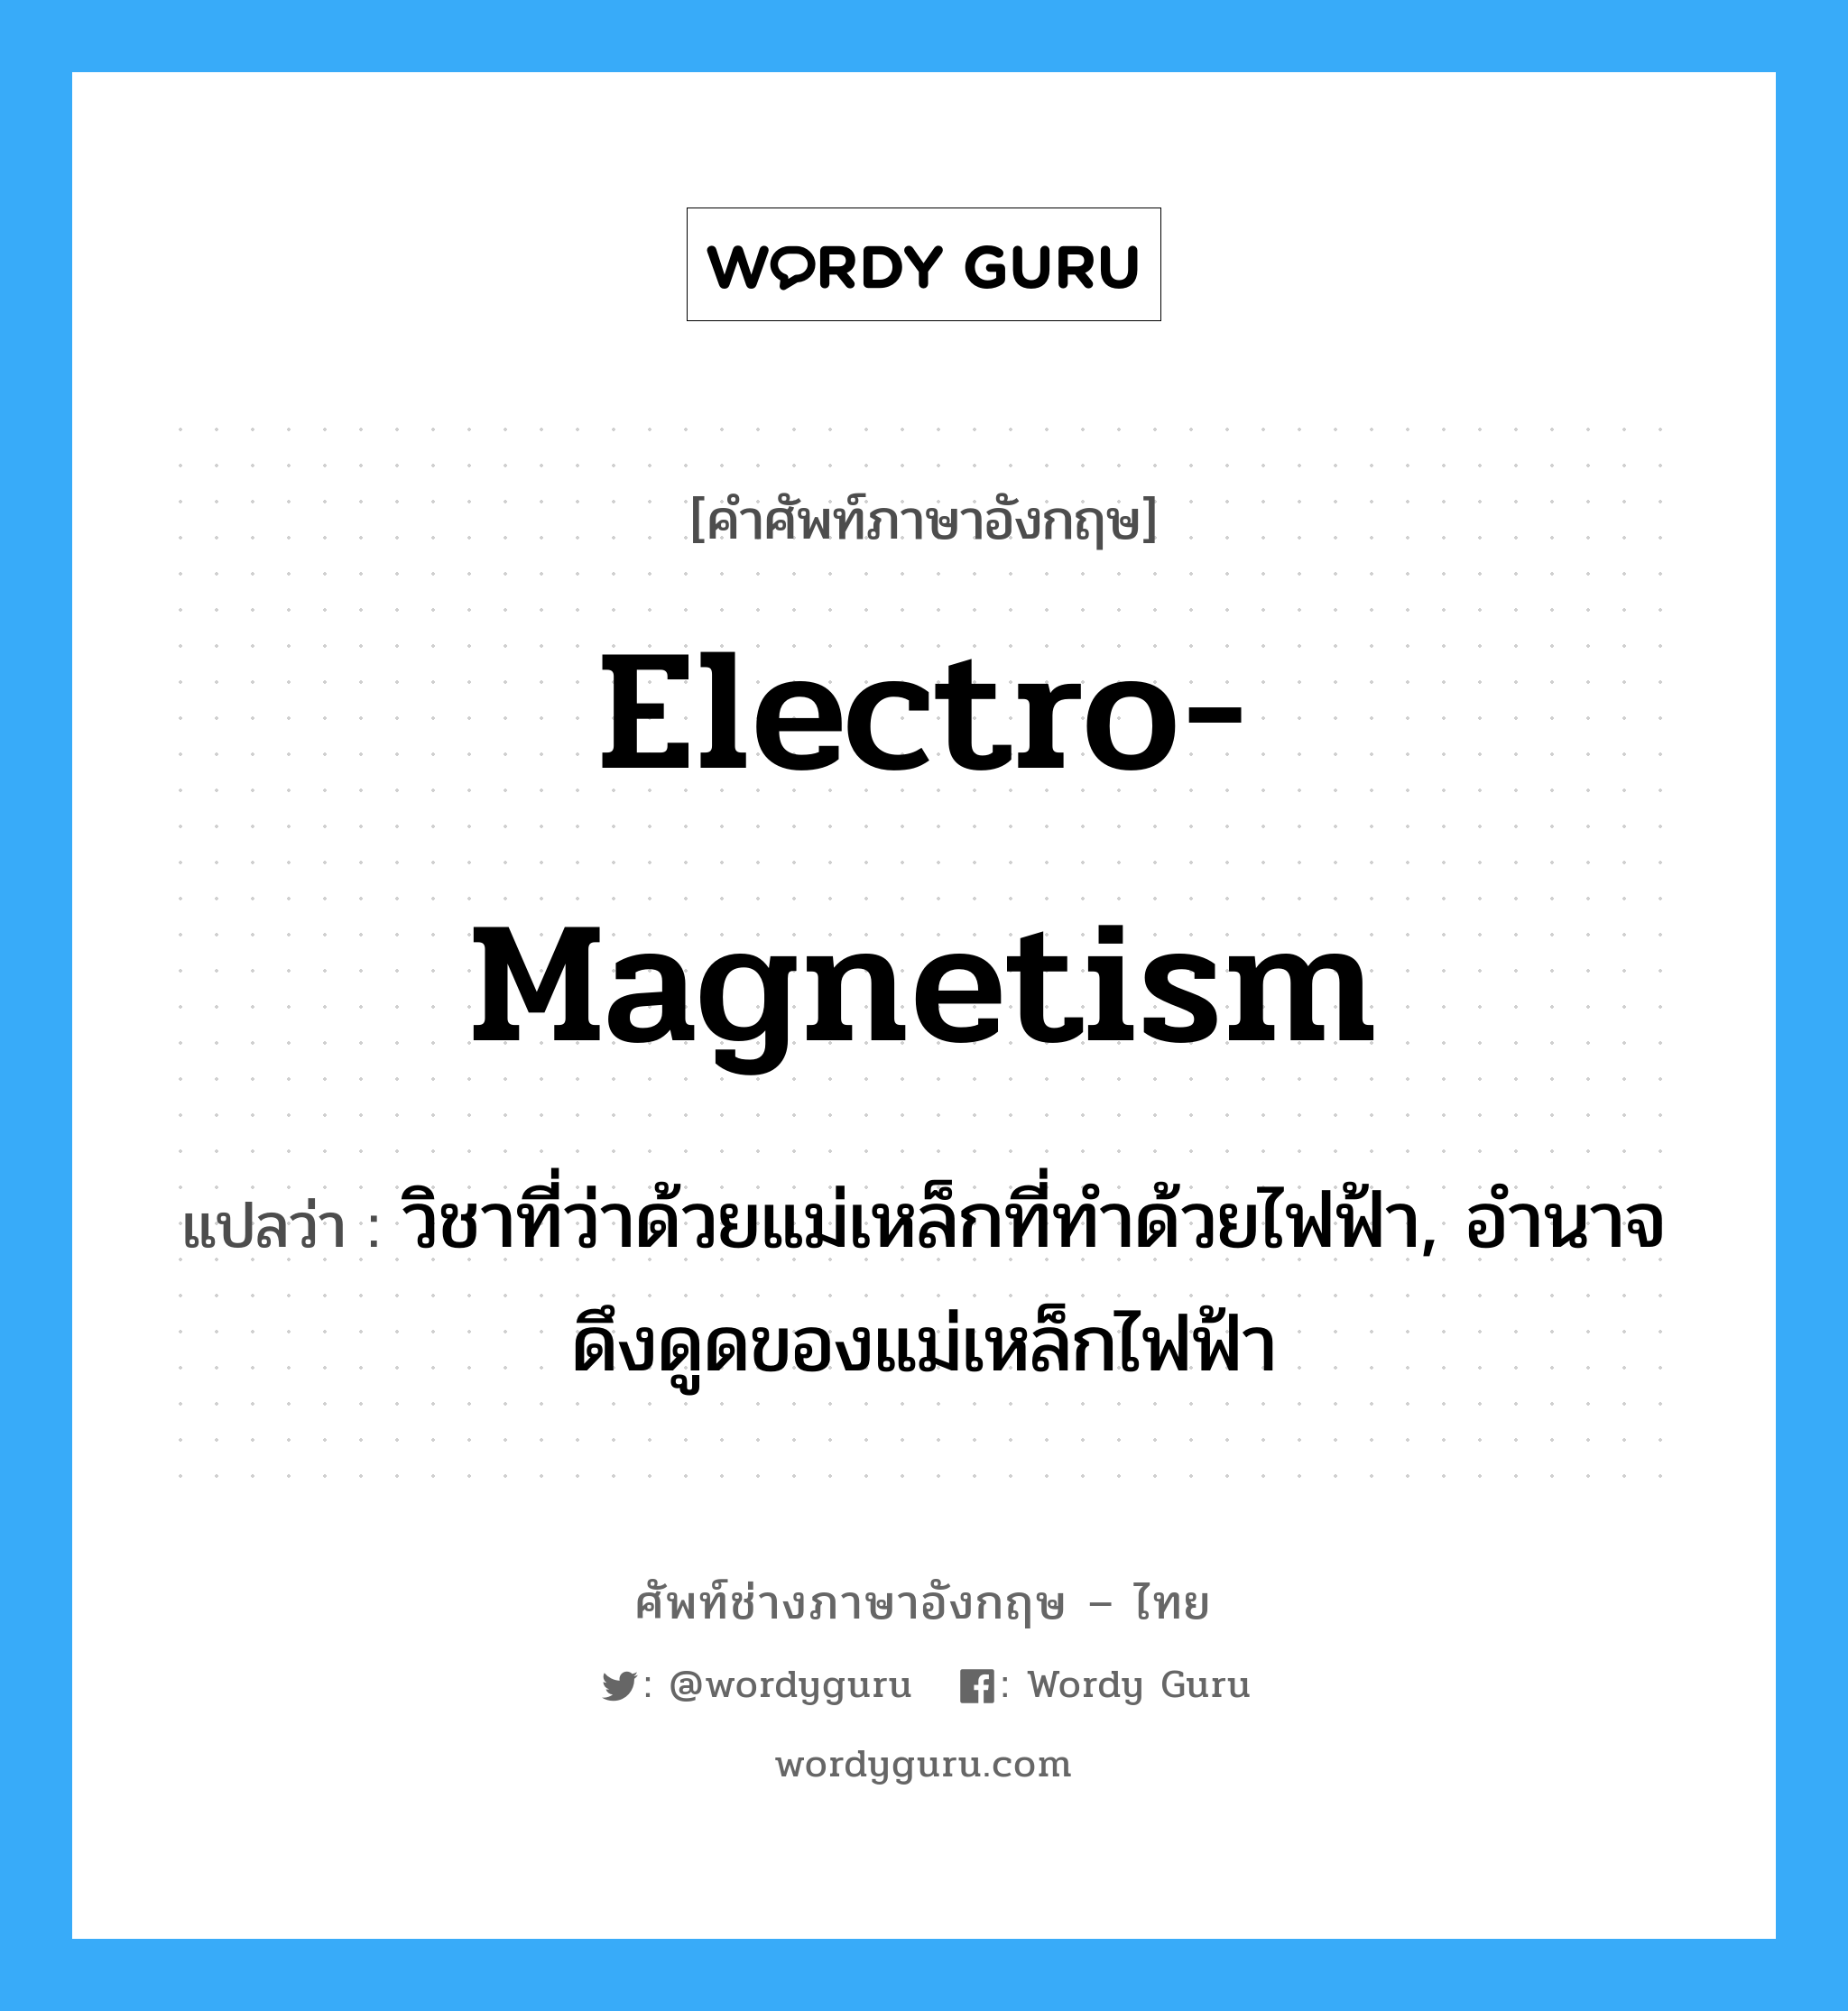 electro-magnetism แปลว่า?, คำศัพท์ช่างภาษาอังกฤษ - ไทย electro-magnetism คำศัพท์ภาษาอังกฤษ electro-magnetism แปลว่า วิชาที่ว่าด้วยแม่เหล็กที่ทำด้วยไฟฟ้า, อำนาจดึงดูดของแม่เหล็กไฟฟ้า